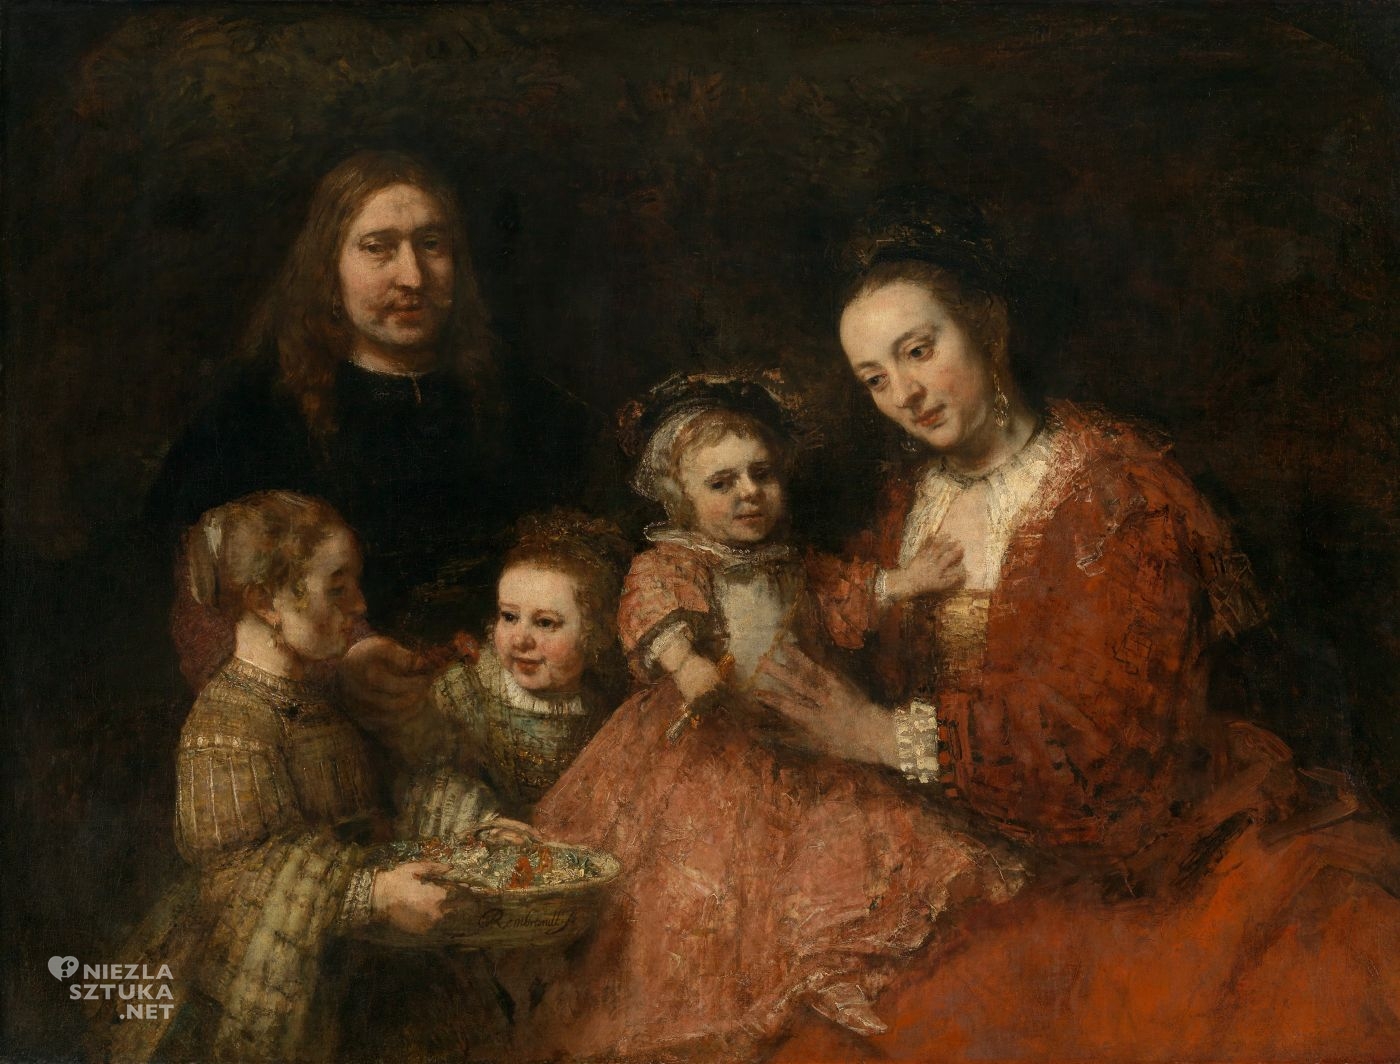 Rembrandt, Portret rodziny, portret rodzinny, Familieportret, niezła sztuka